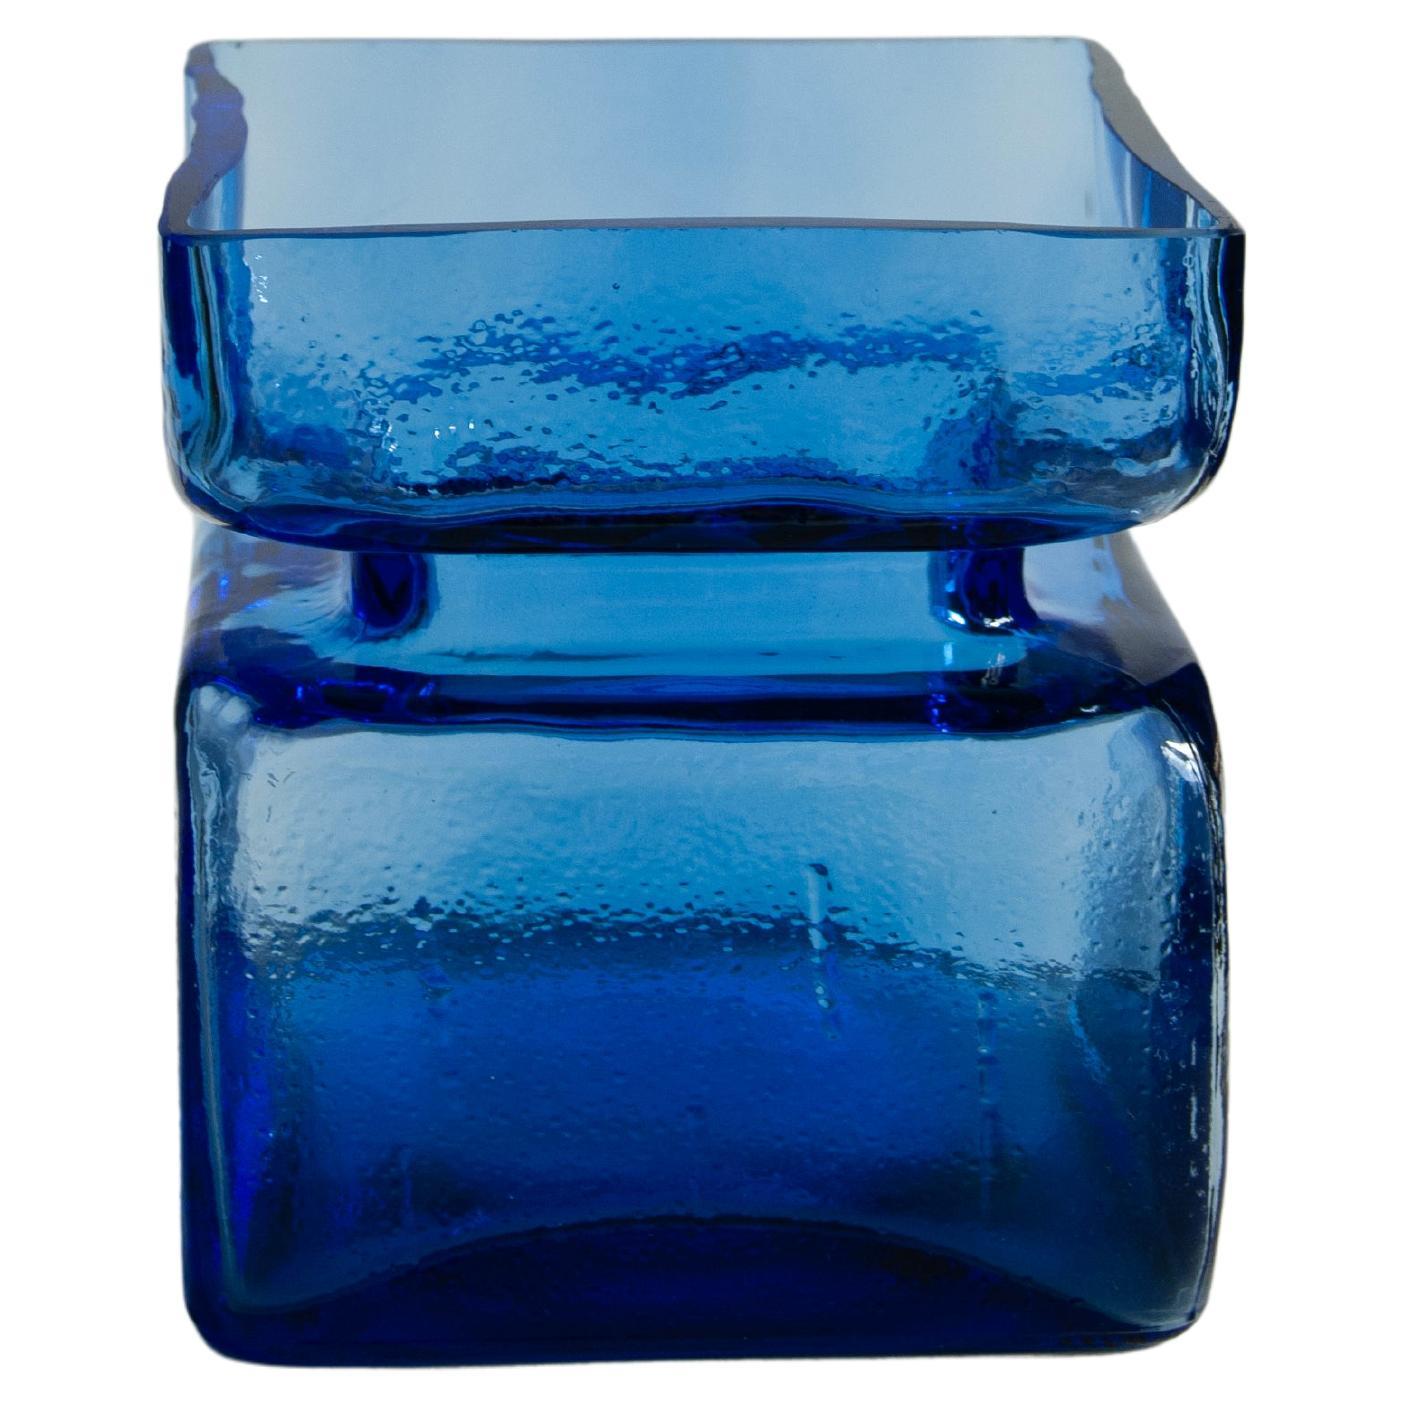 
Verstanden! Her er den oppdaterte annonsen med den ekstra informasjonen lagt til:

Einzigartiges Sammlerstück: Blaue Pala-Vase von Helena Tynell

Tauchen Sie ein in ein Stück finnischer Glasgeschichte mit dieser atemberaubenden blauen Pala (Block)